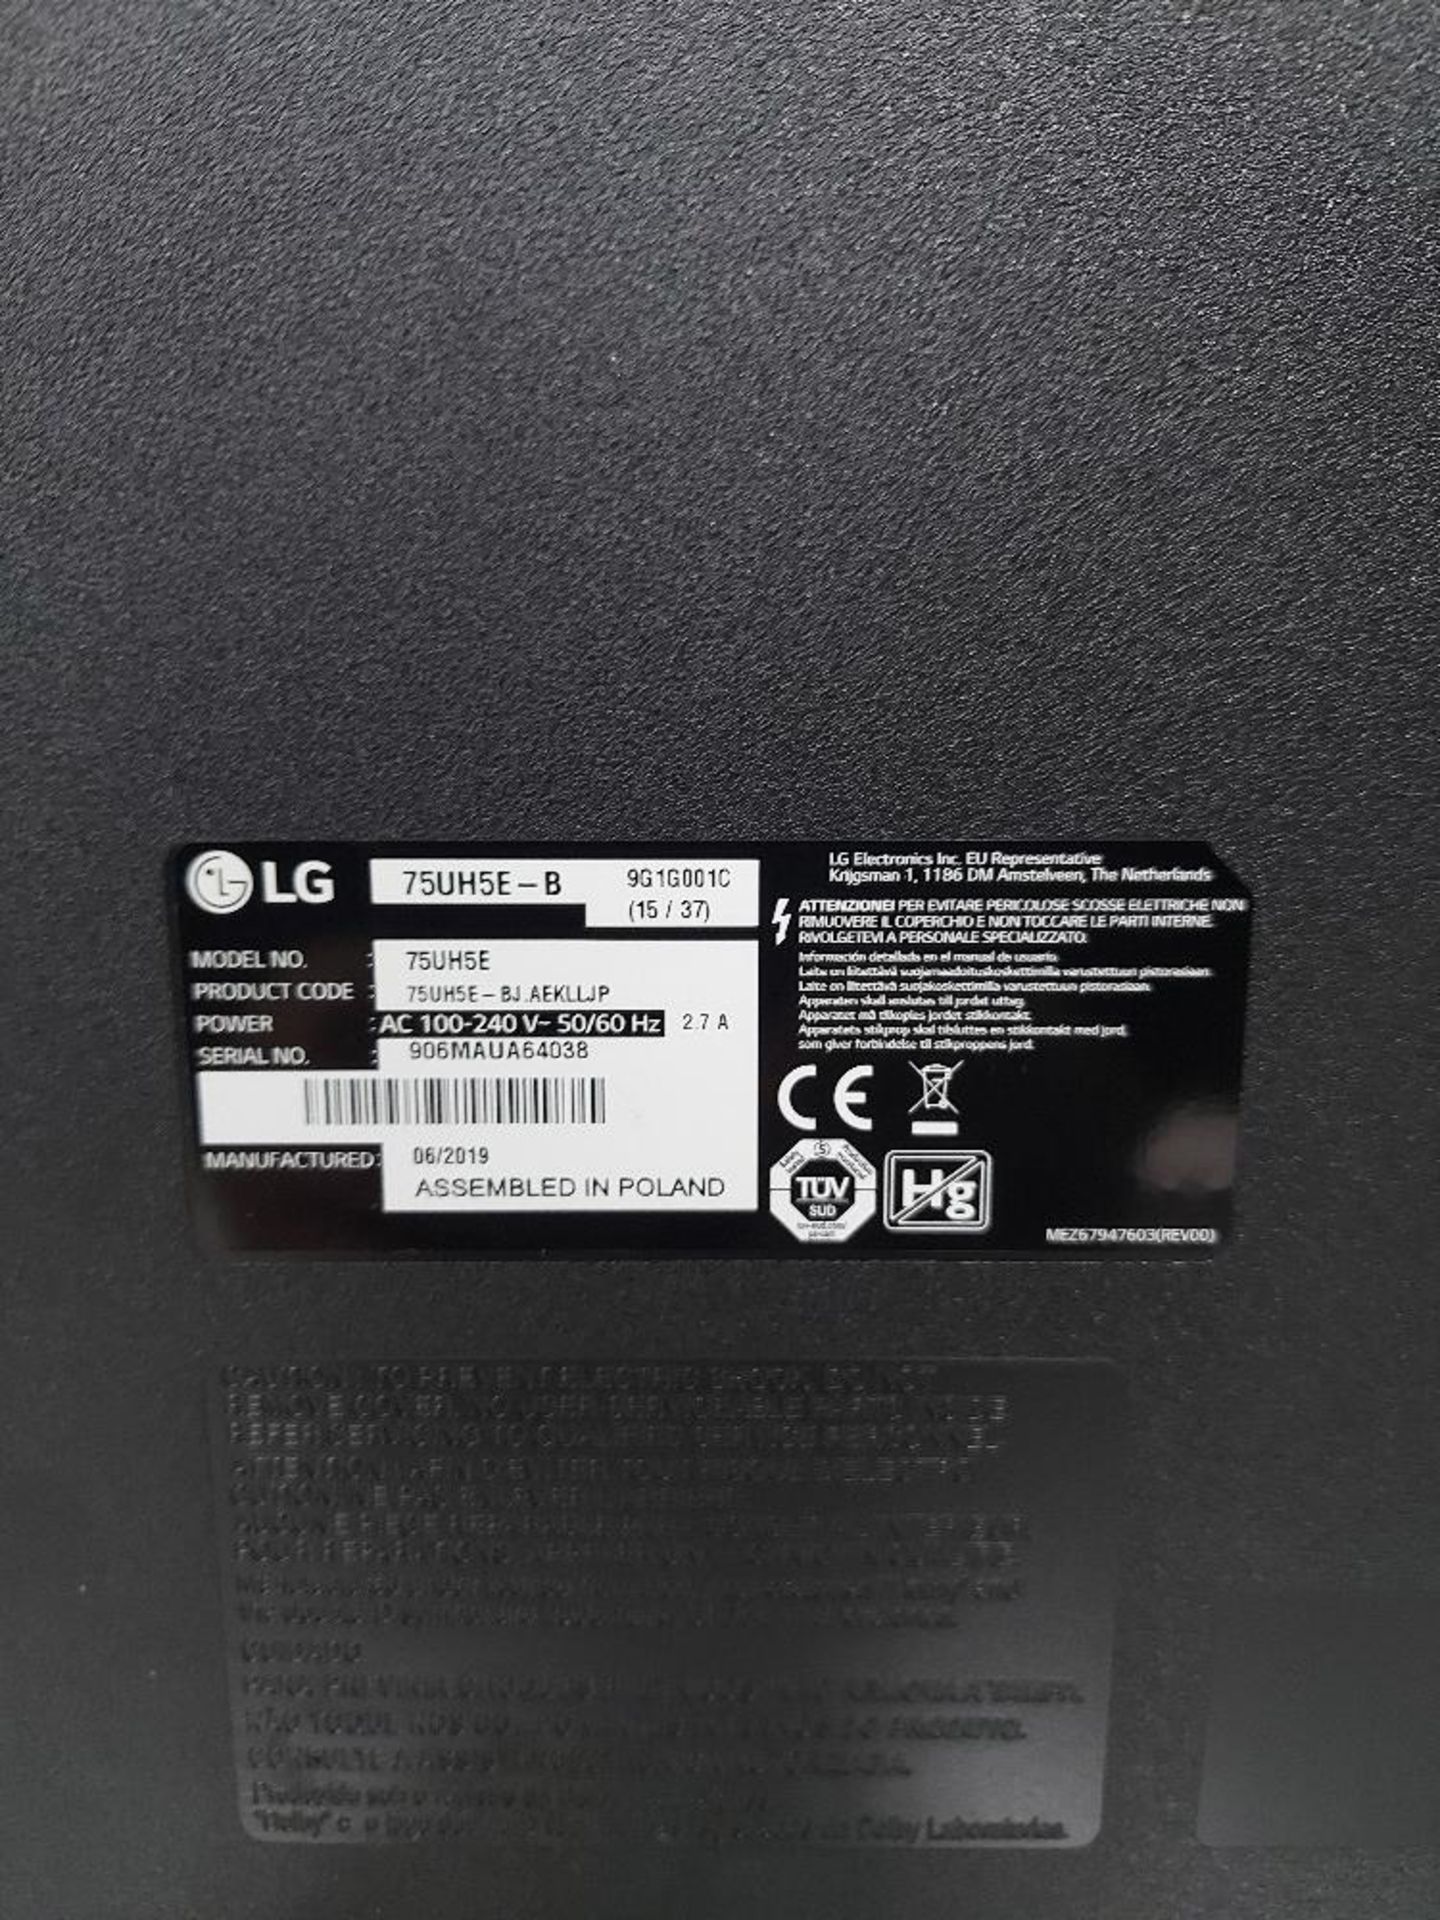 LG 75UH5E-B 75'' Display - Image 4 of 6